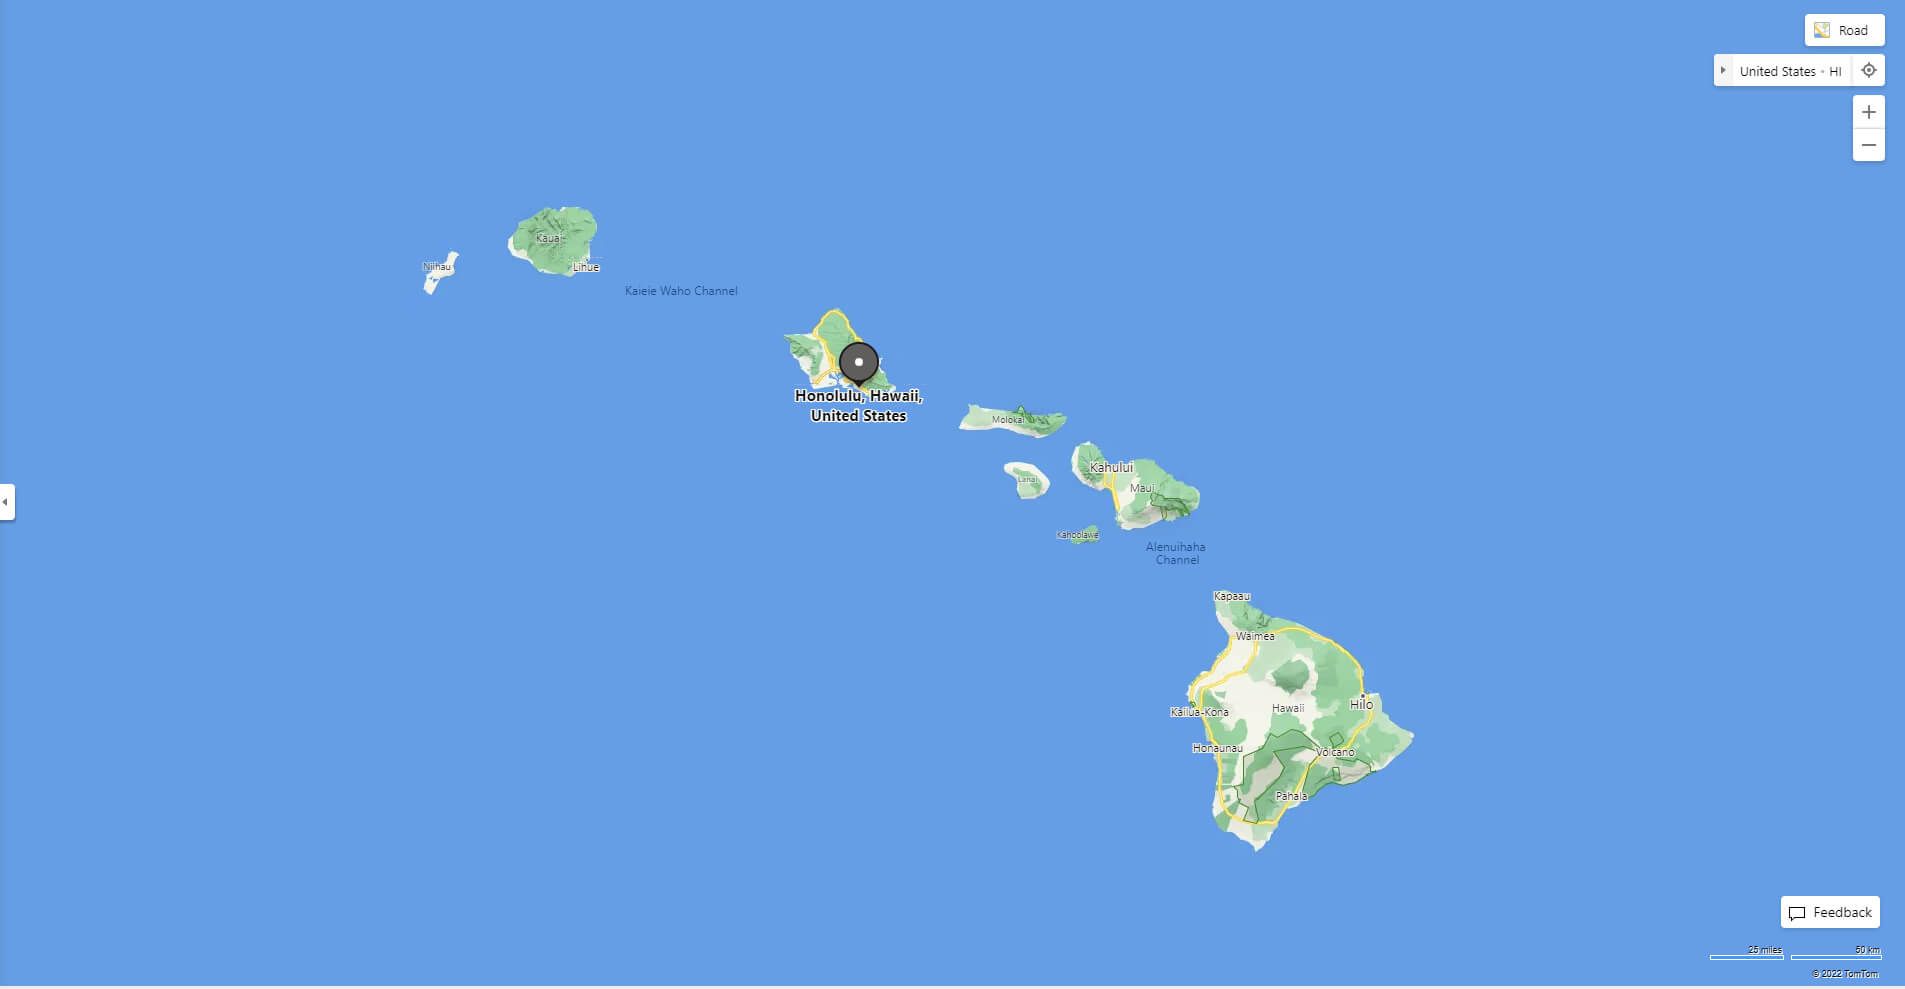 Where is Honolulu in Hawaii